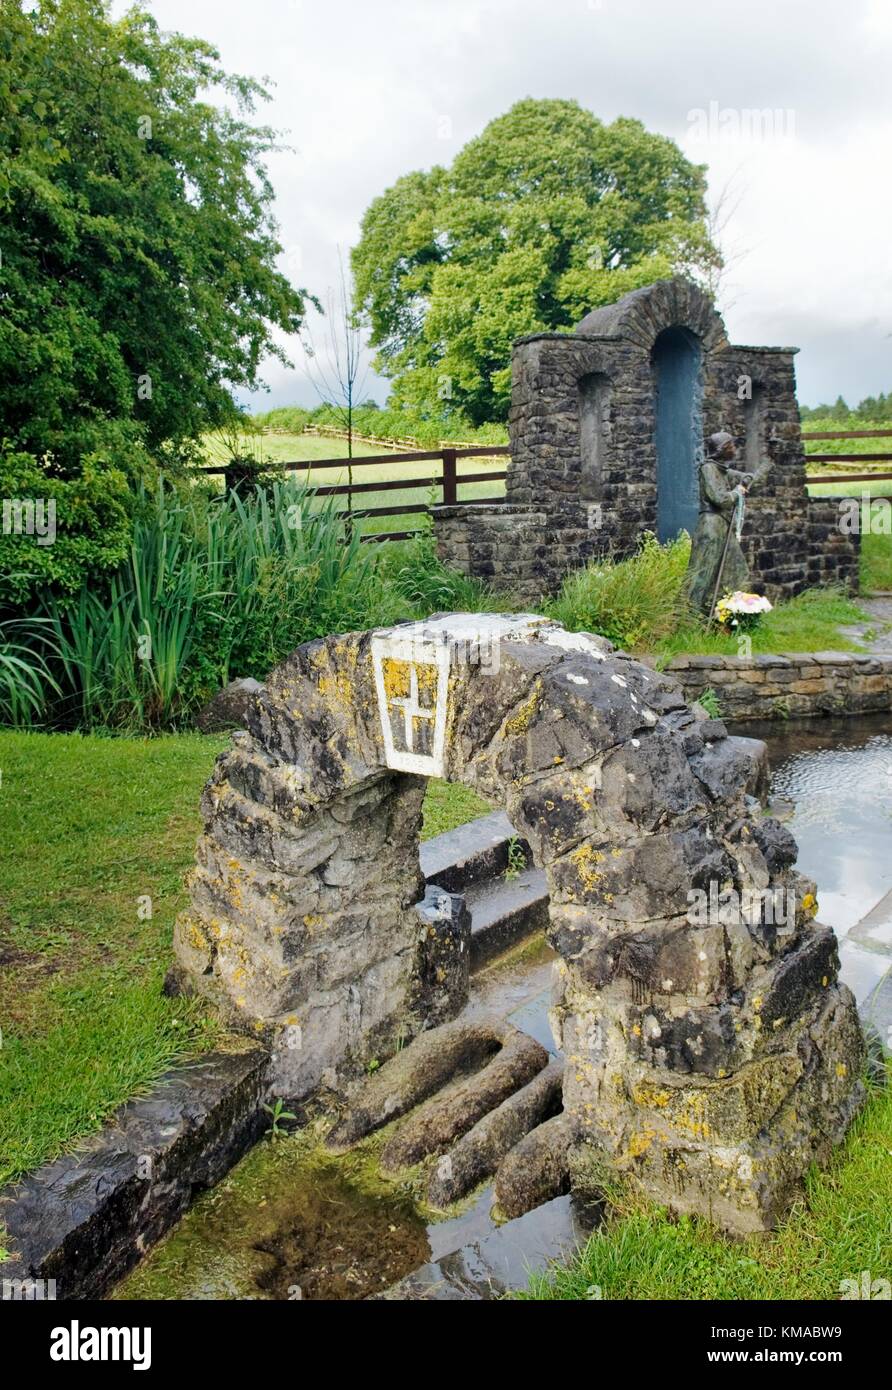 Santa Brigida è Pozzo santo, inizio pagana e celtica medievale sito cristiana vicino alla città di Kildare, nella contea di Kildare, Irlanda. Foto Stock